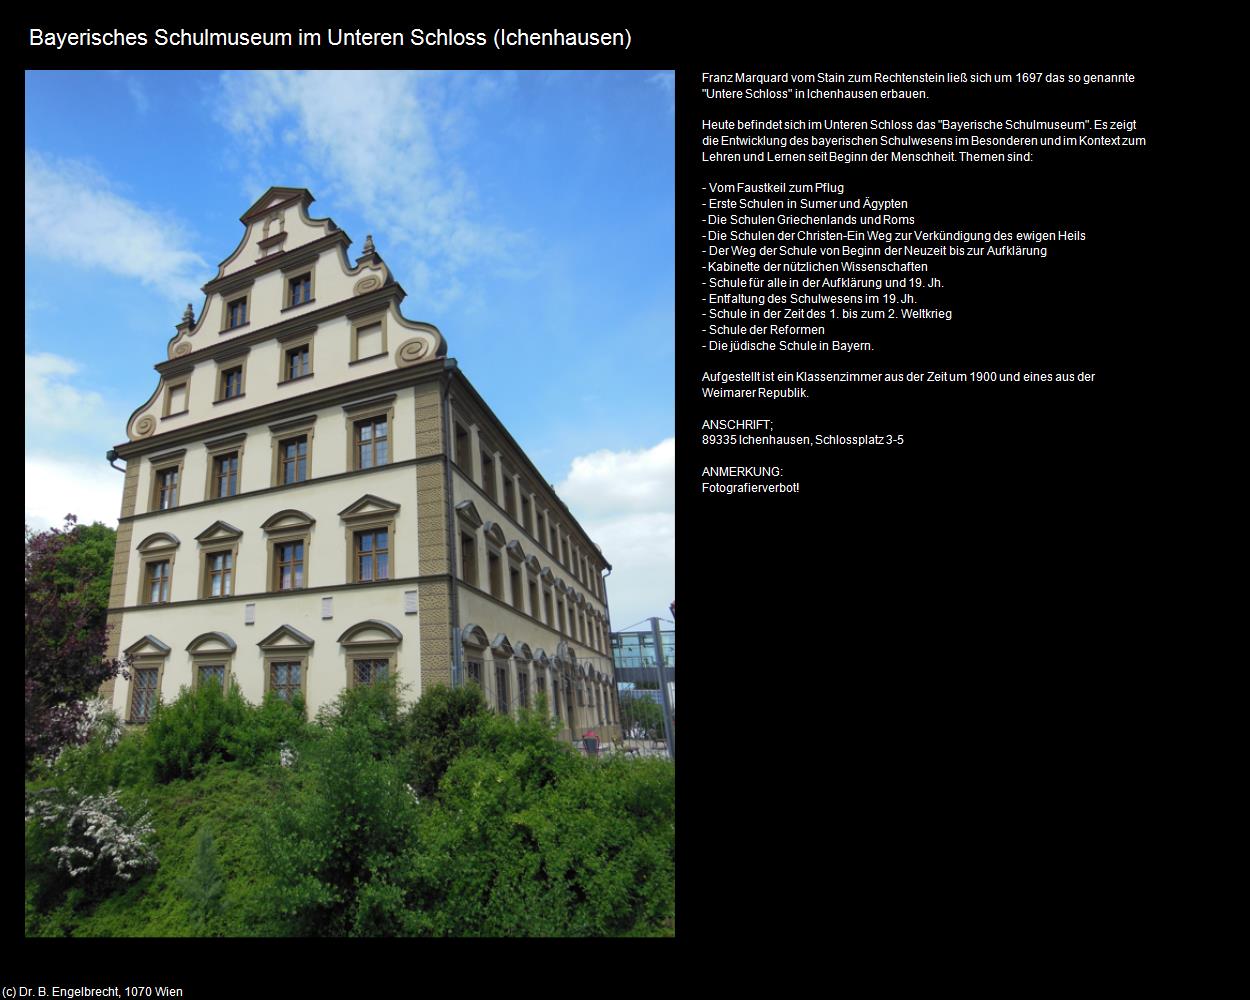 Bayerisches Schulmuseum im Unteres Schloss (Ichenhausen) in Kulturatlas-BAYERN